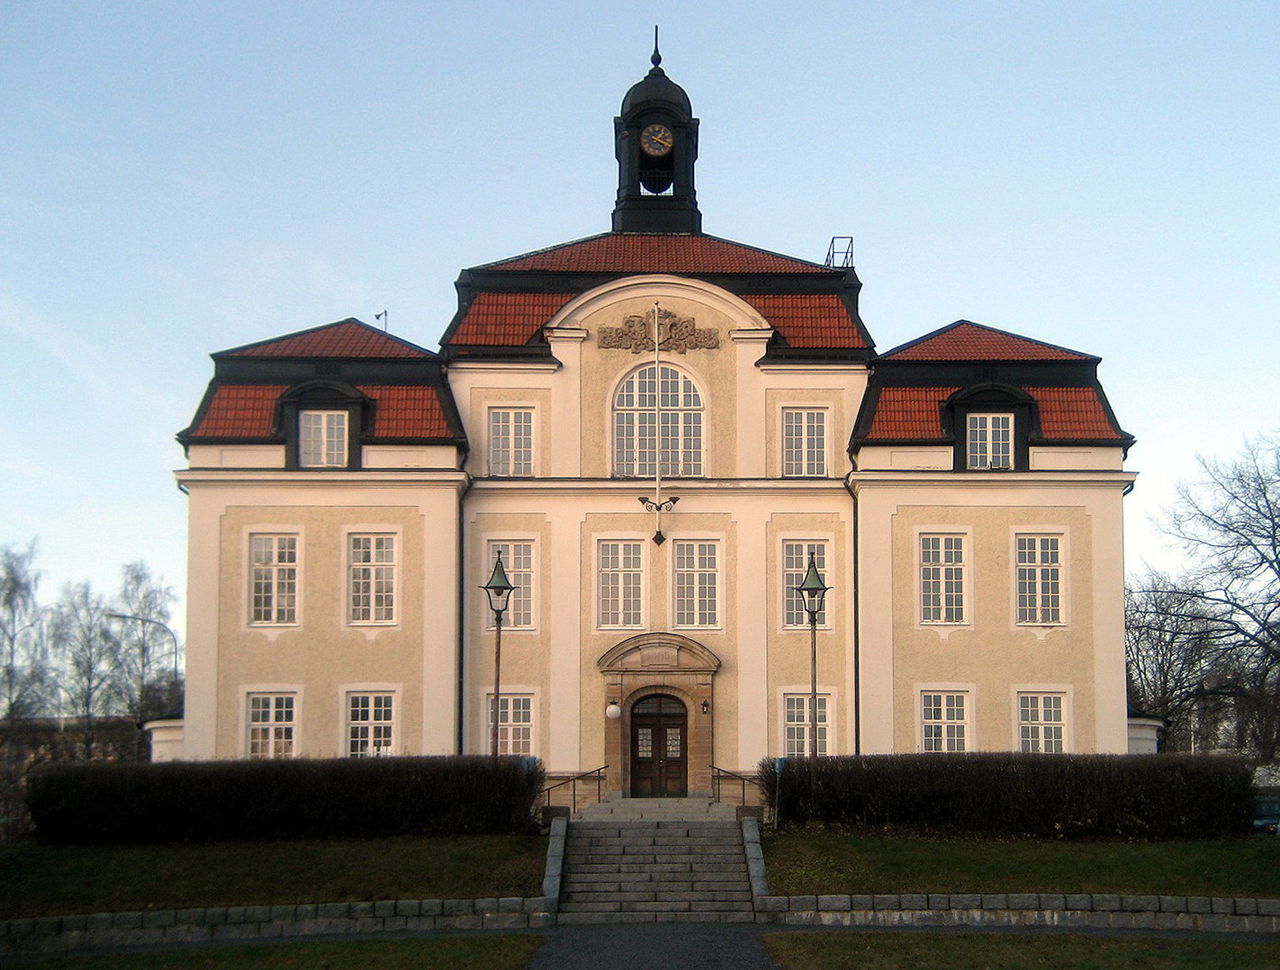 Rådhuset är Örnsköldsviks vackraste byggnad.